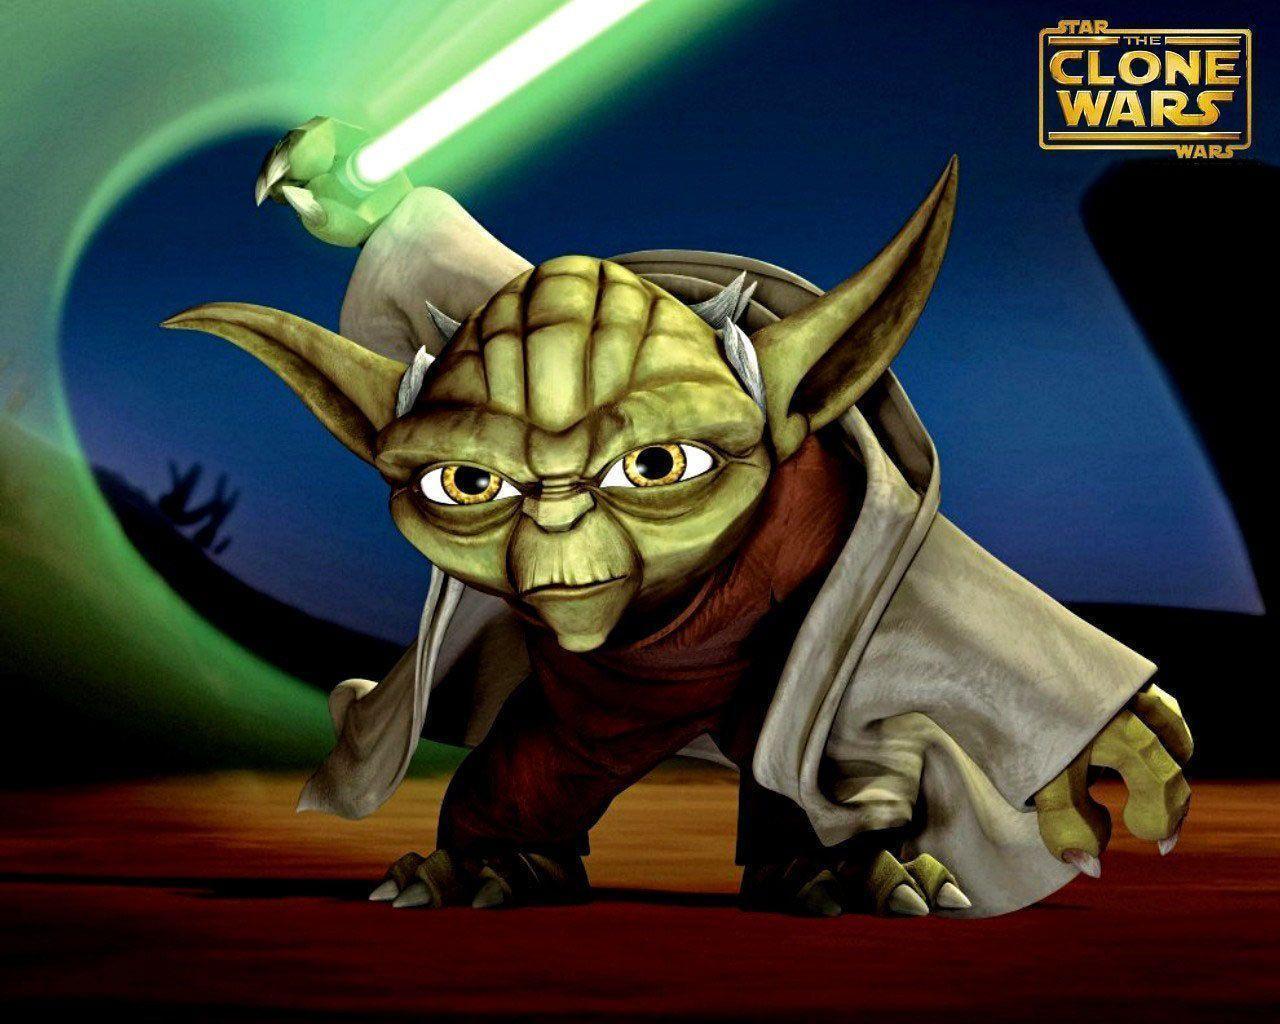 Clone Wars Wars: Clone Wars Wallpaper